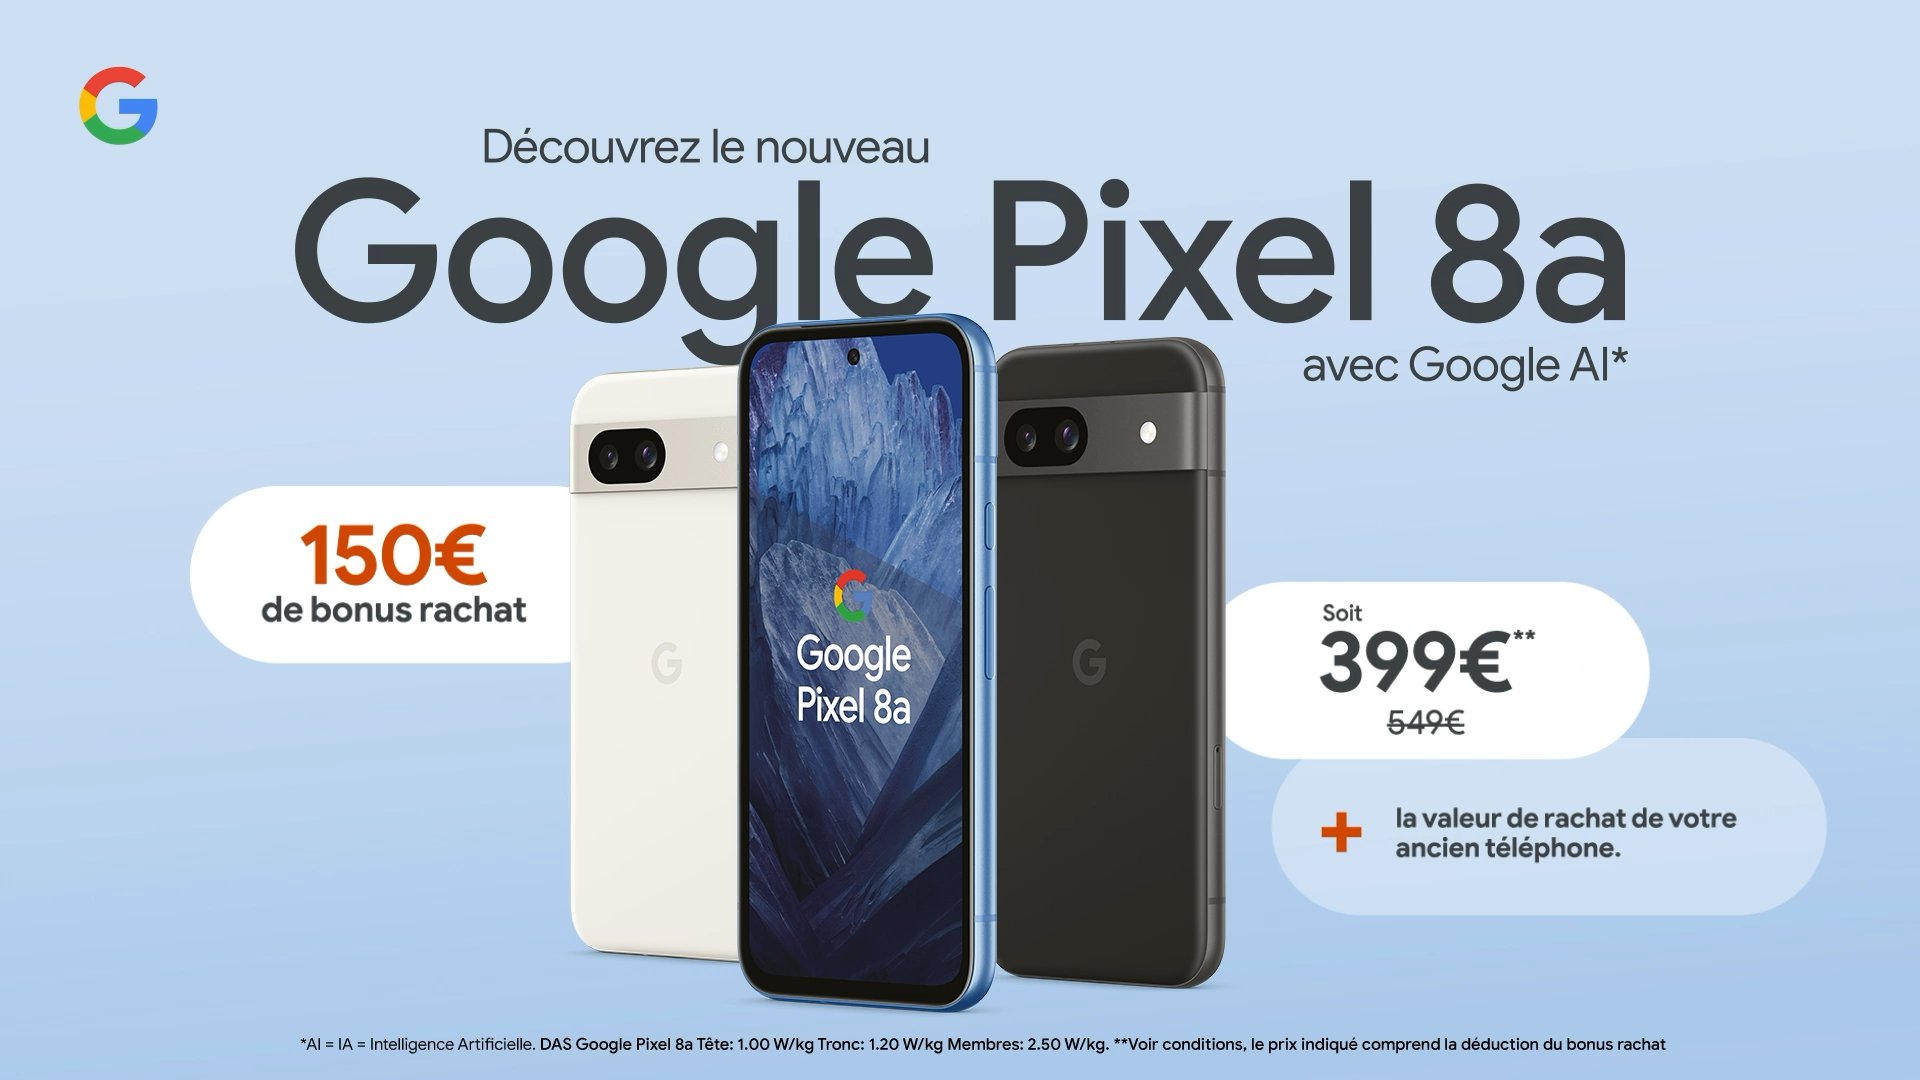 Google Pixel 8a vazou preços europeus